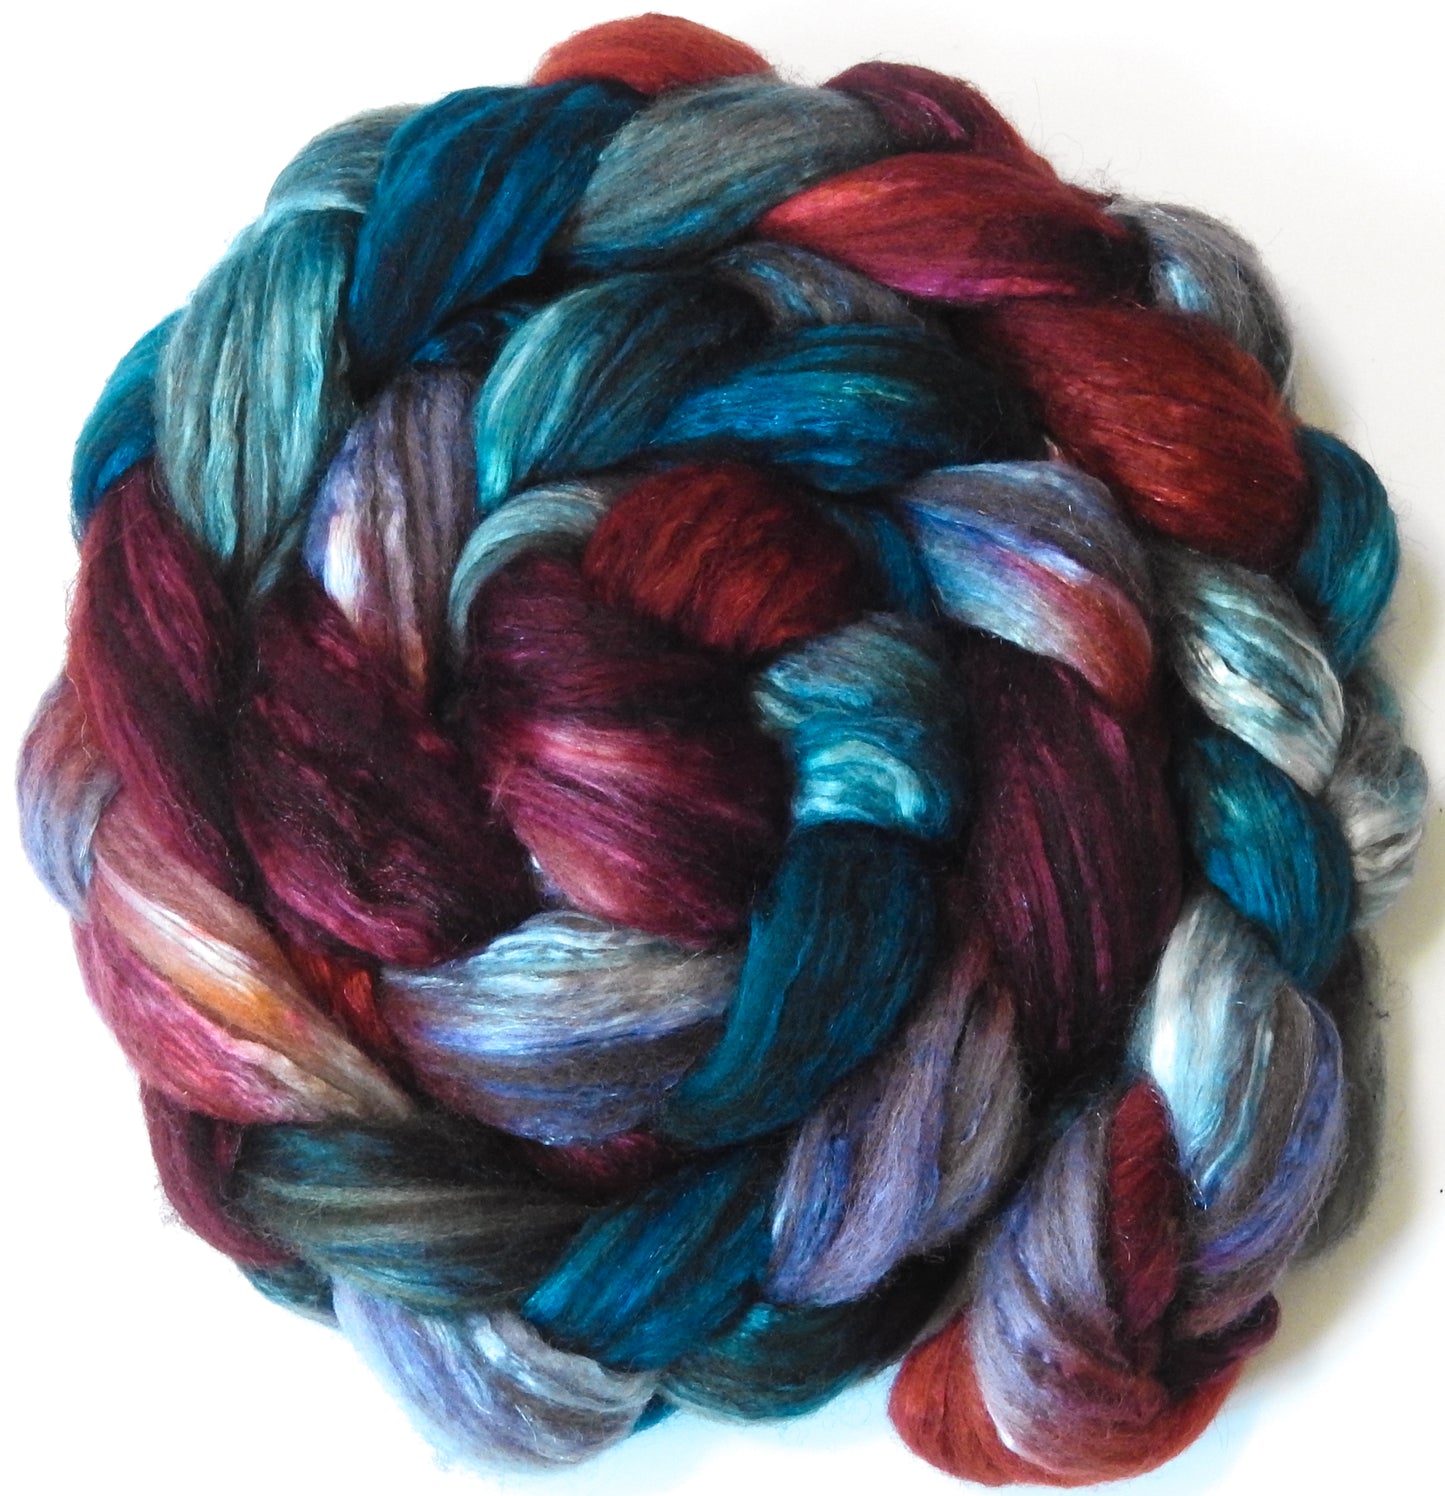 Flannel (5.5 oz) - Batt in a Braid #7 - Polwarth/ Manx / Mulberry silk/ Firestar (30/30/30/10)